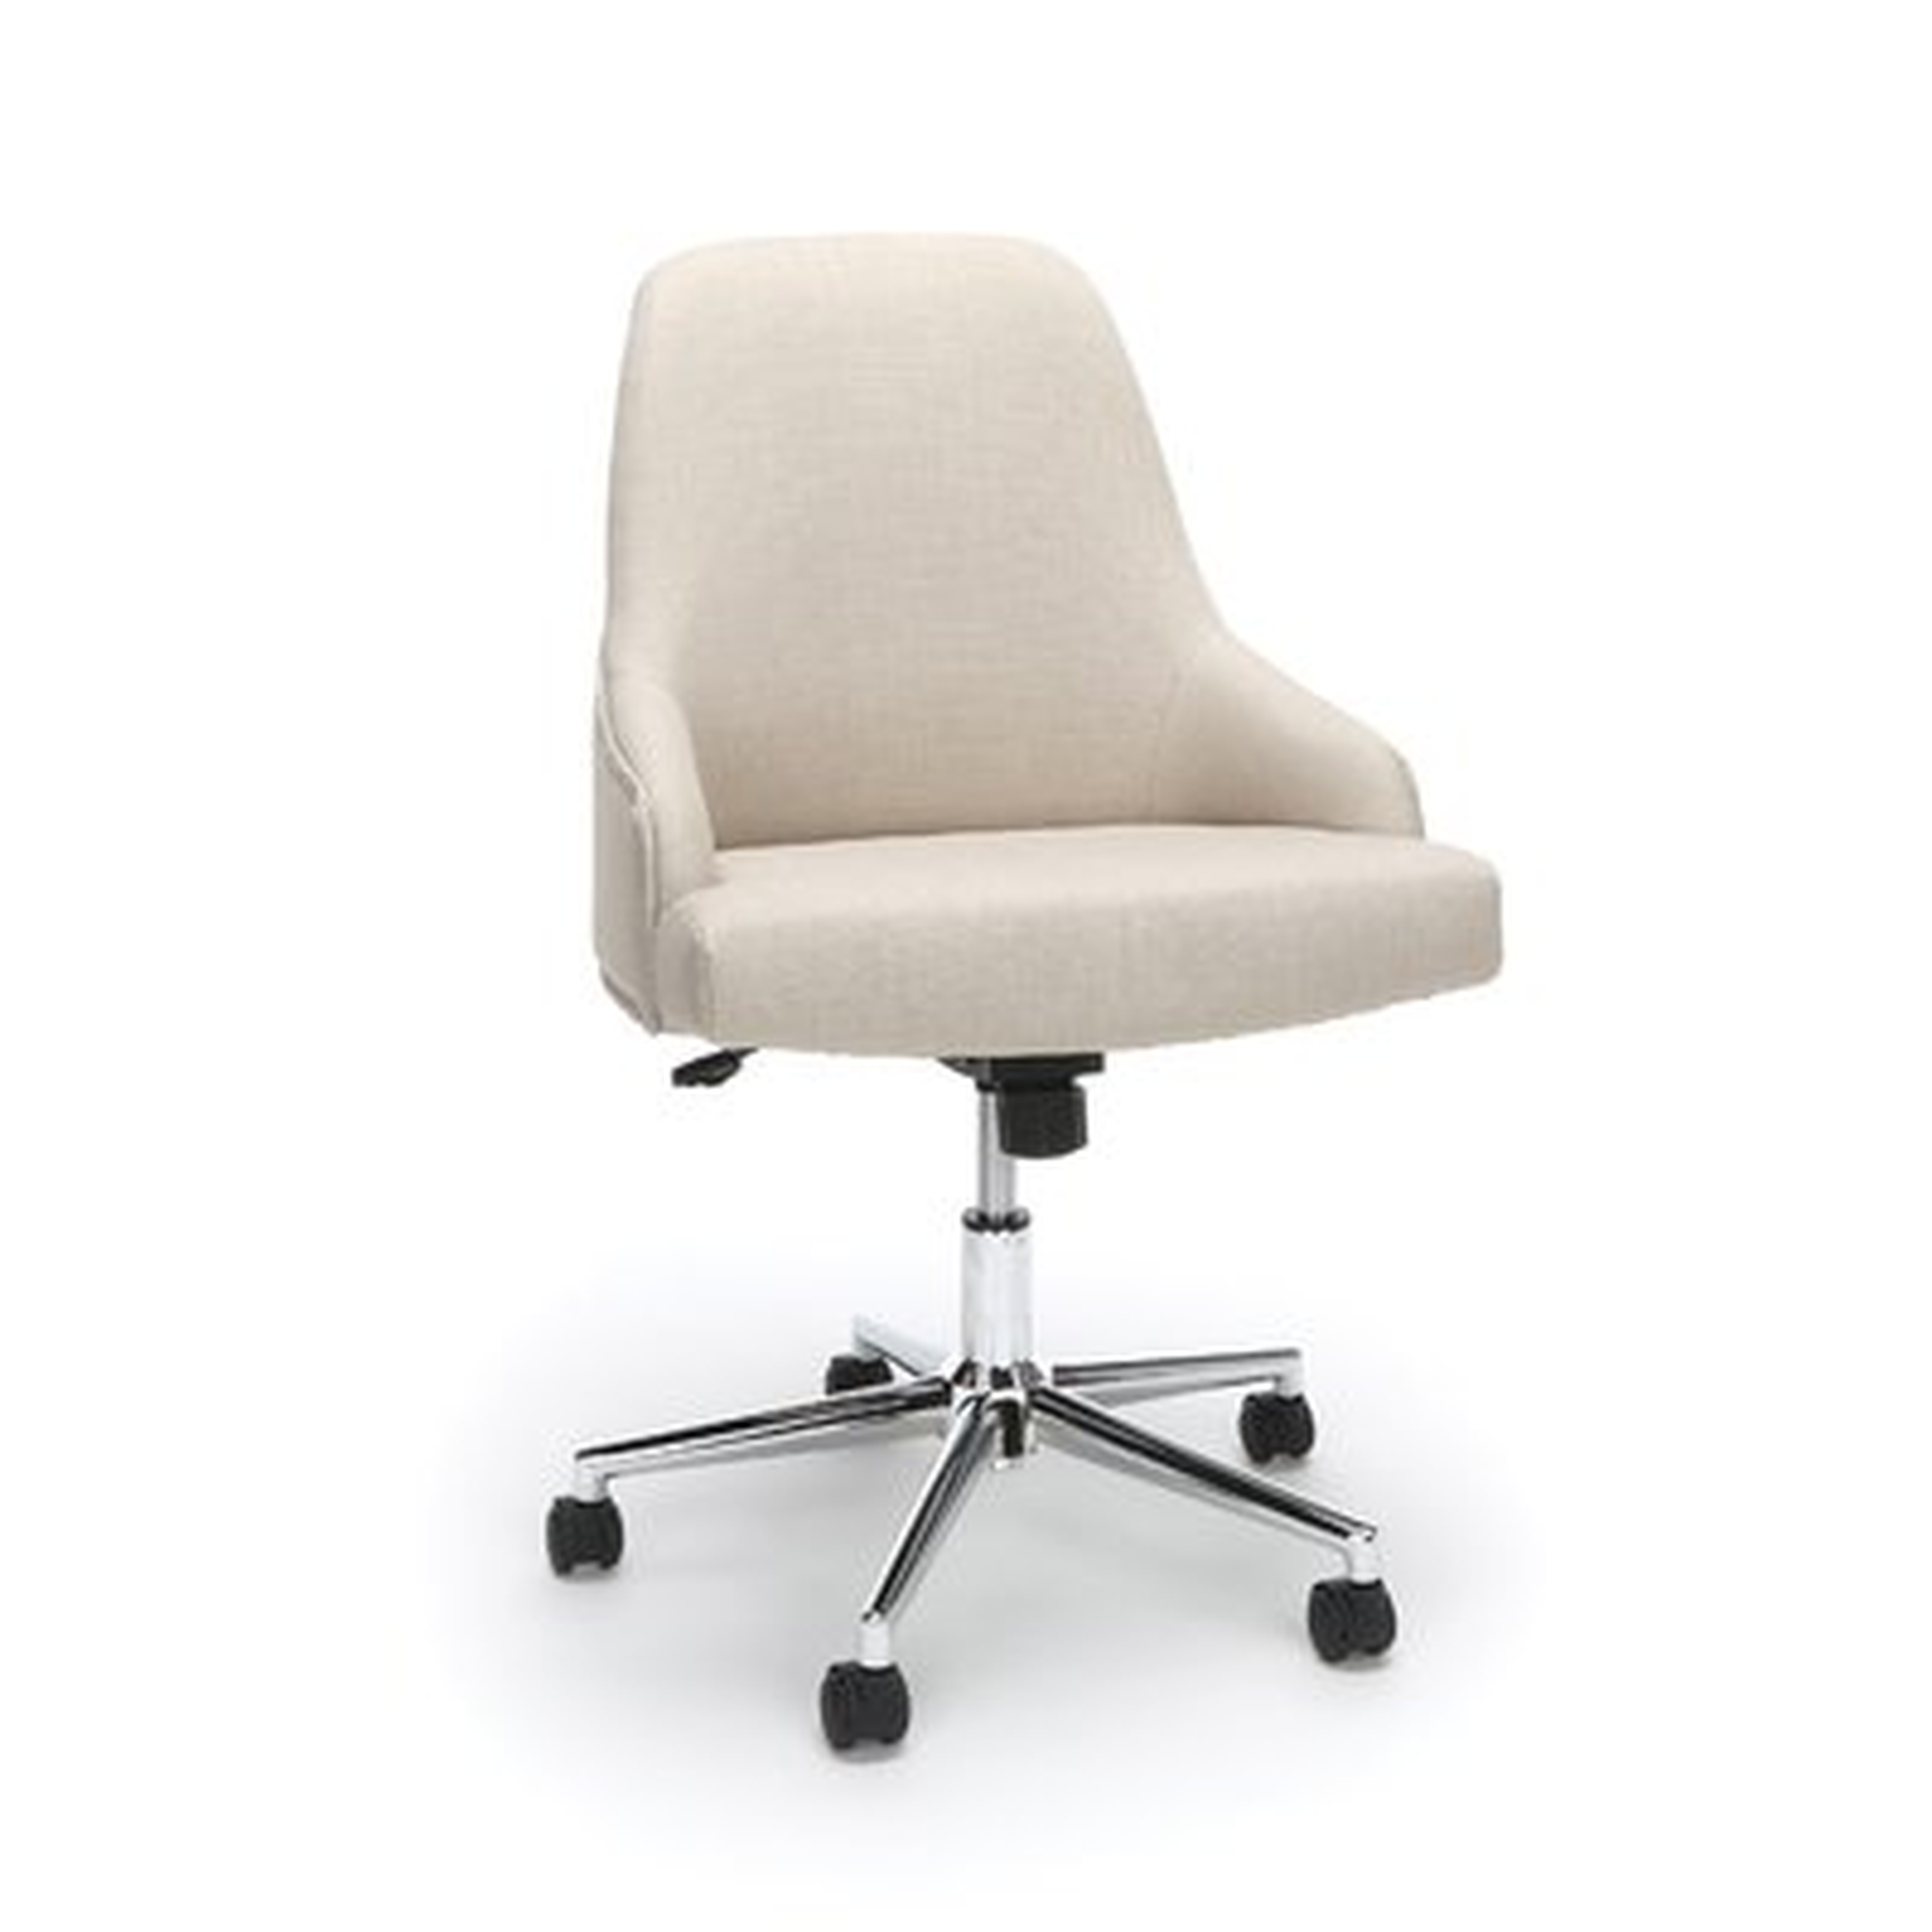 Colebreene Lower Upholstered Home Desk Office Chair - Wayfair